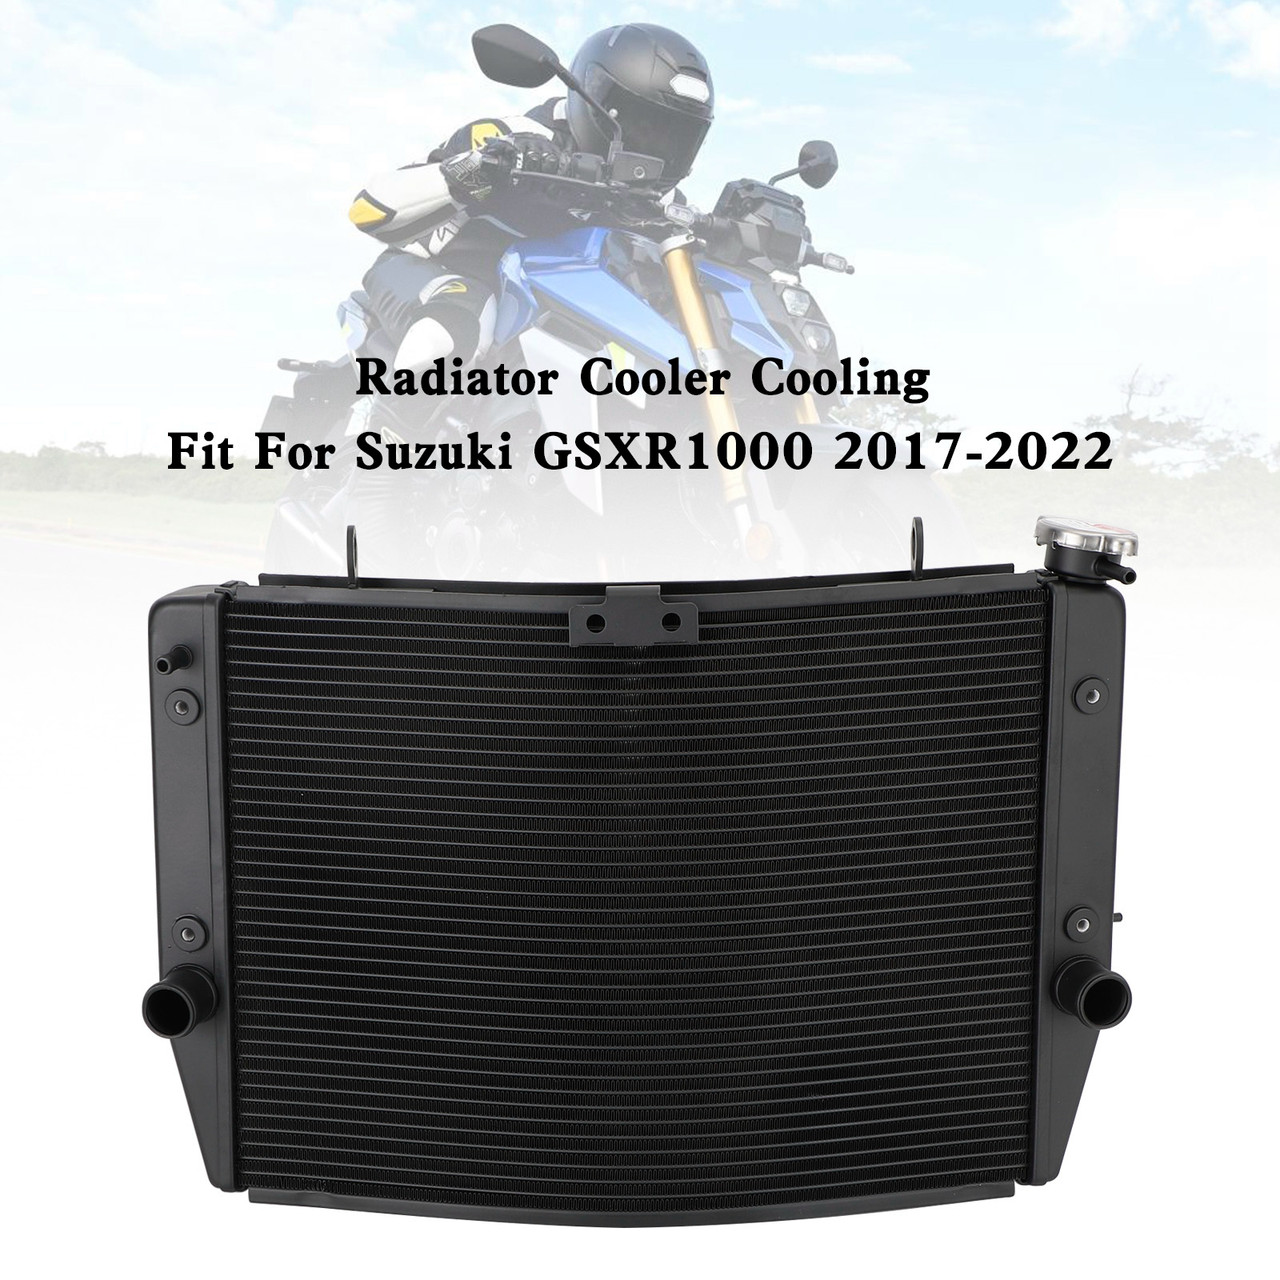 Engine Radiator Cooler Cooling Fit For Suzuki GSXR 1000 GSX-R 2017-2022 K11